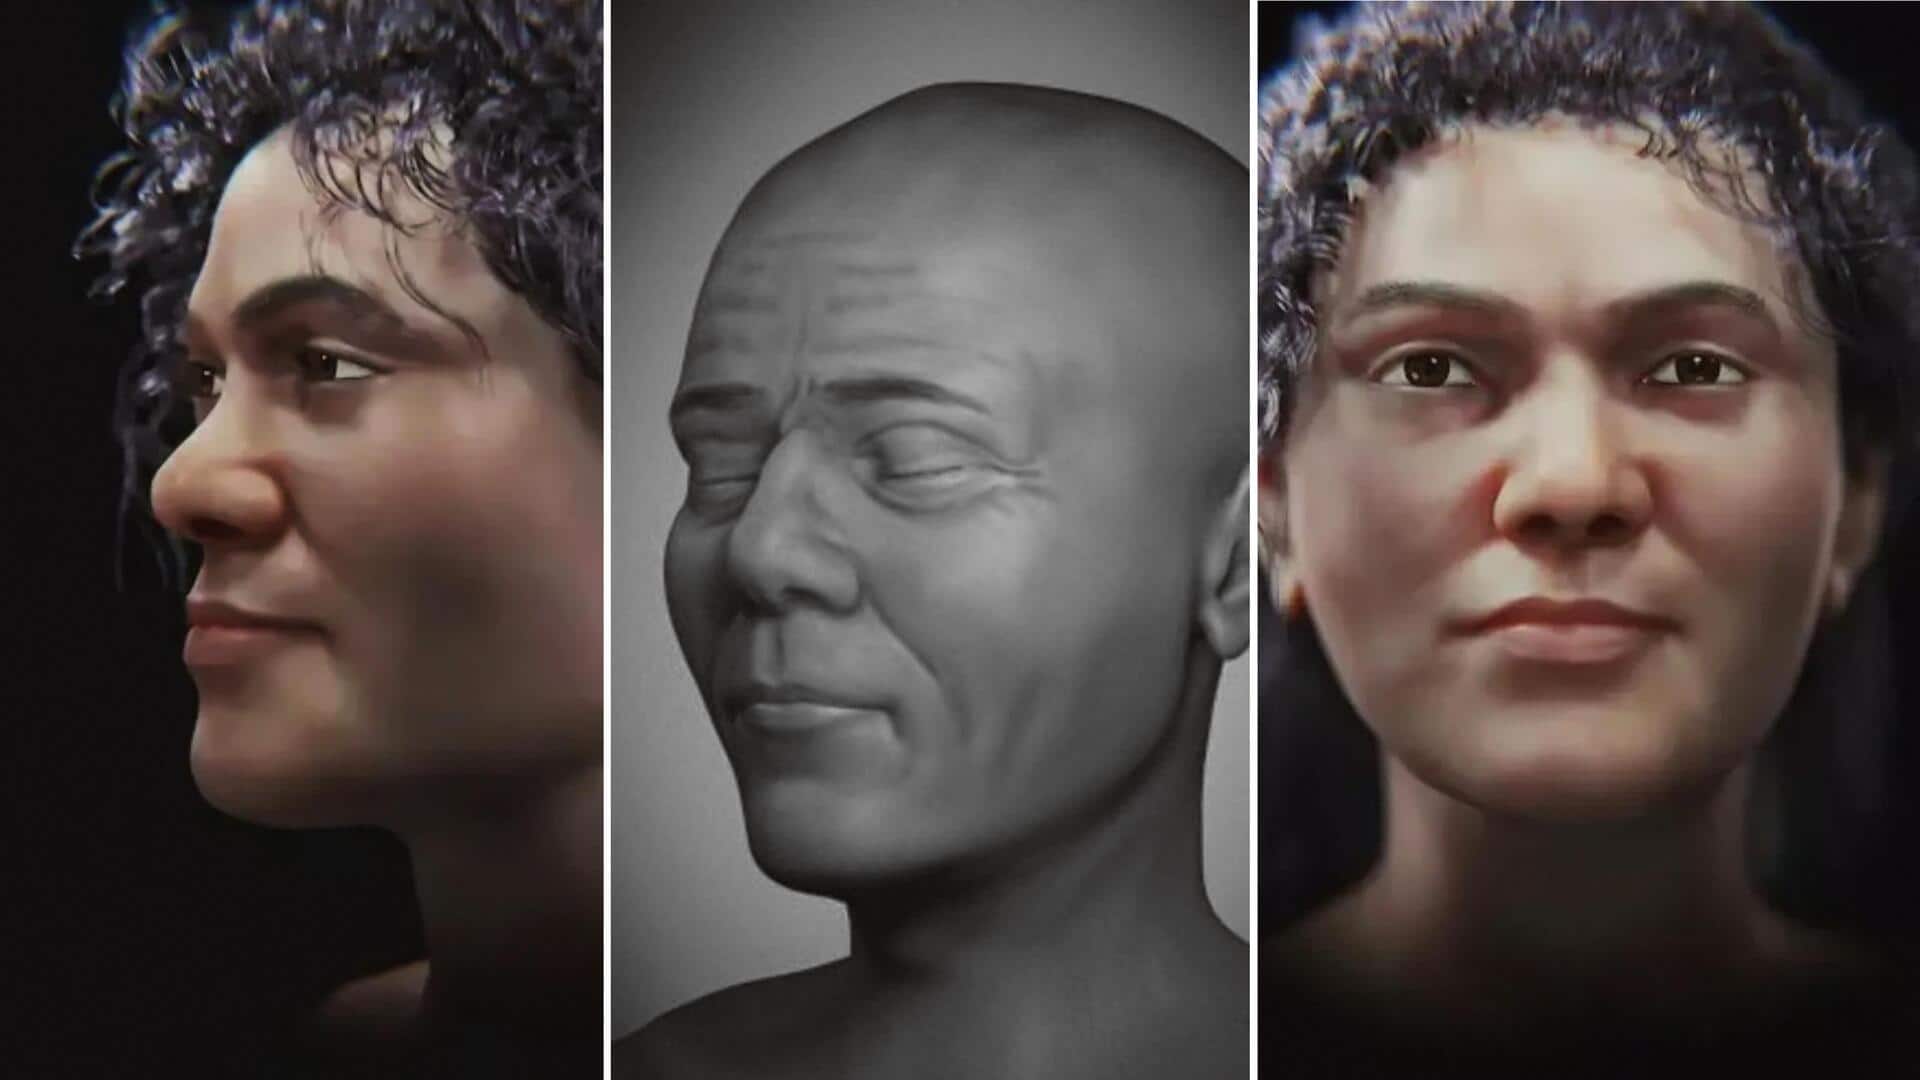 45,000 साल पहले हुई थी महिला की मौत, वैज्ञानिकों ने खोपड़ी से बनाया डिजिटल चेहरा